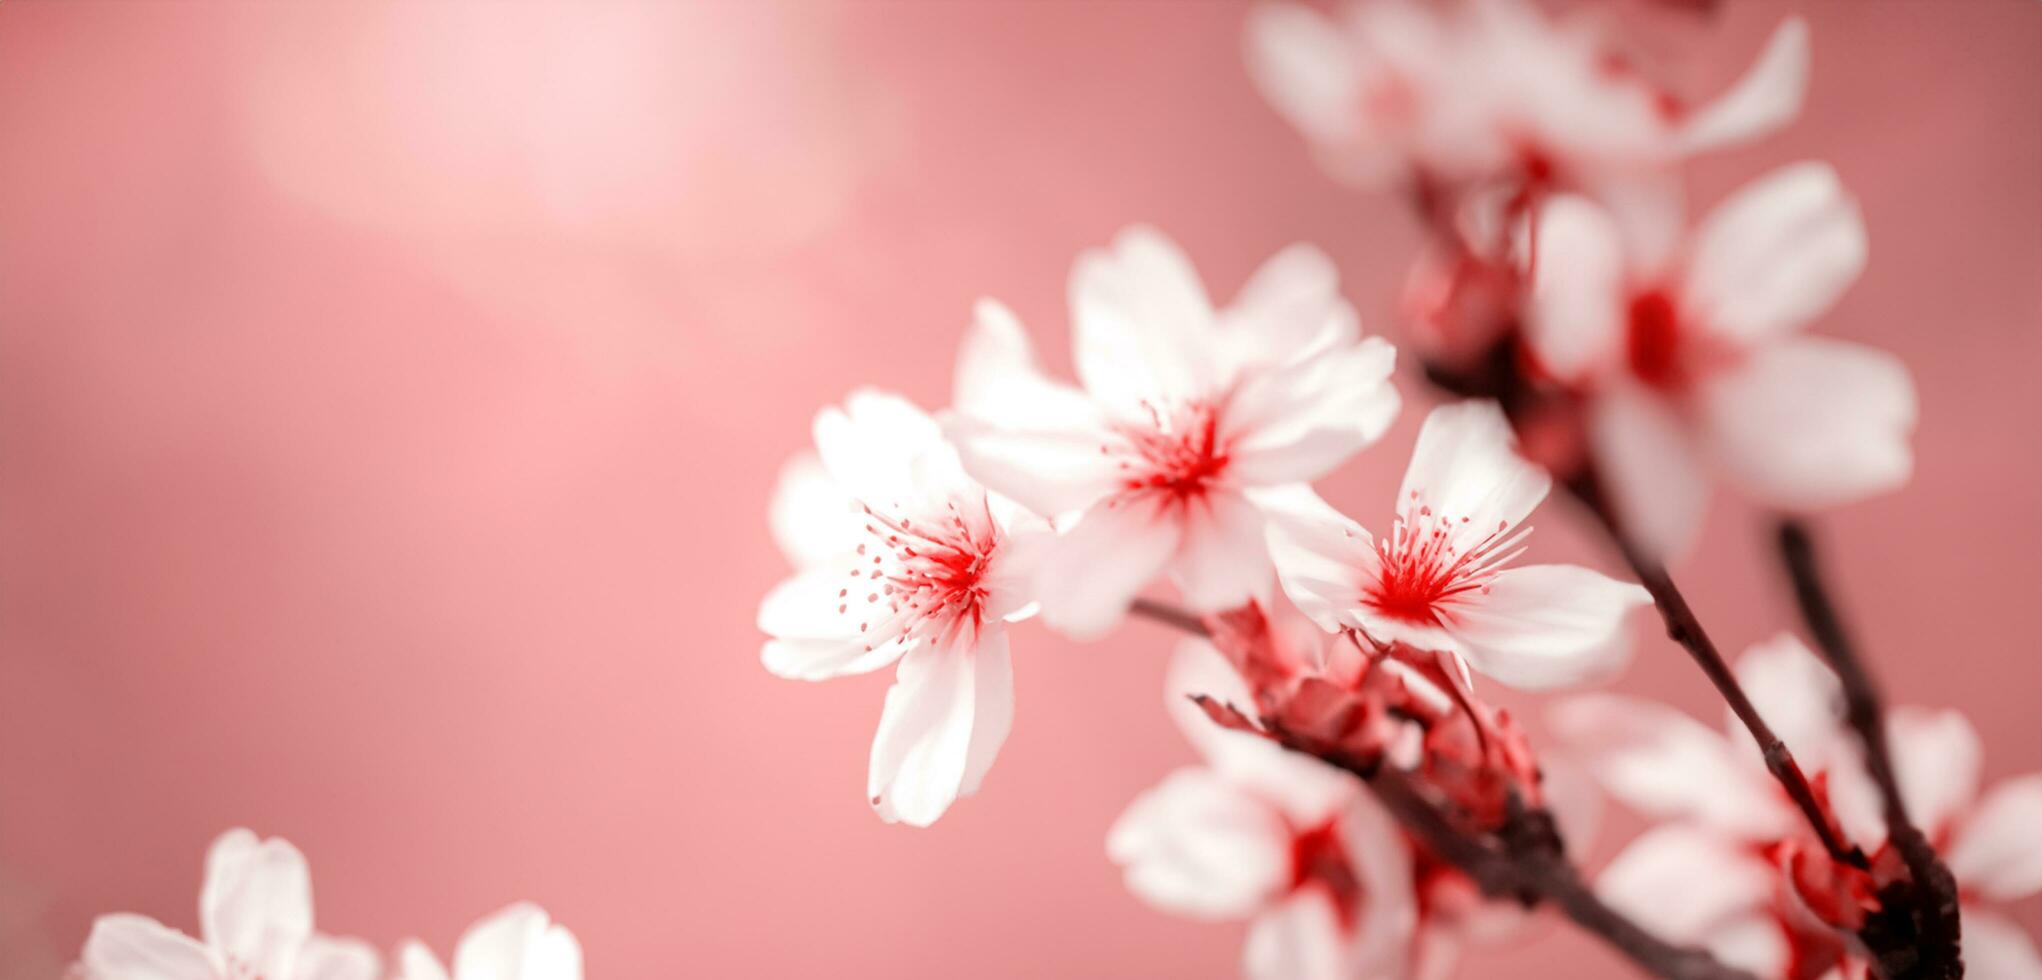 ljus bakgrund av körsbär blommar natur i japan foto